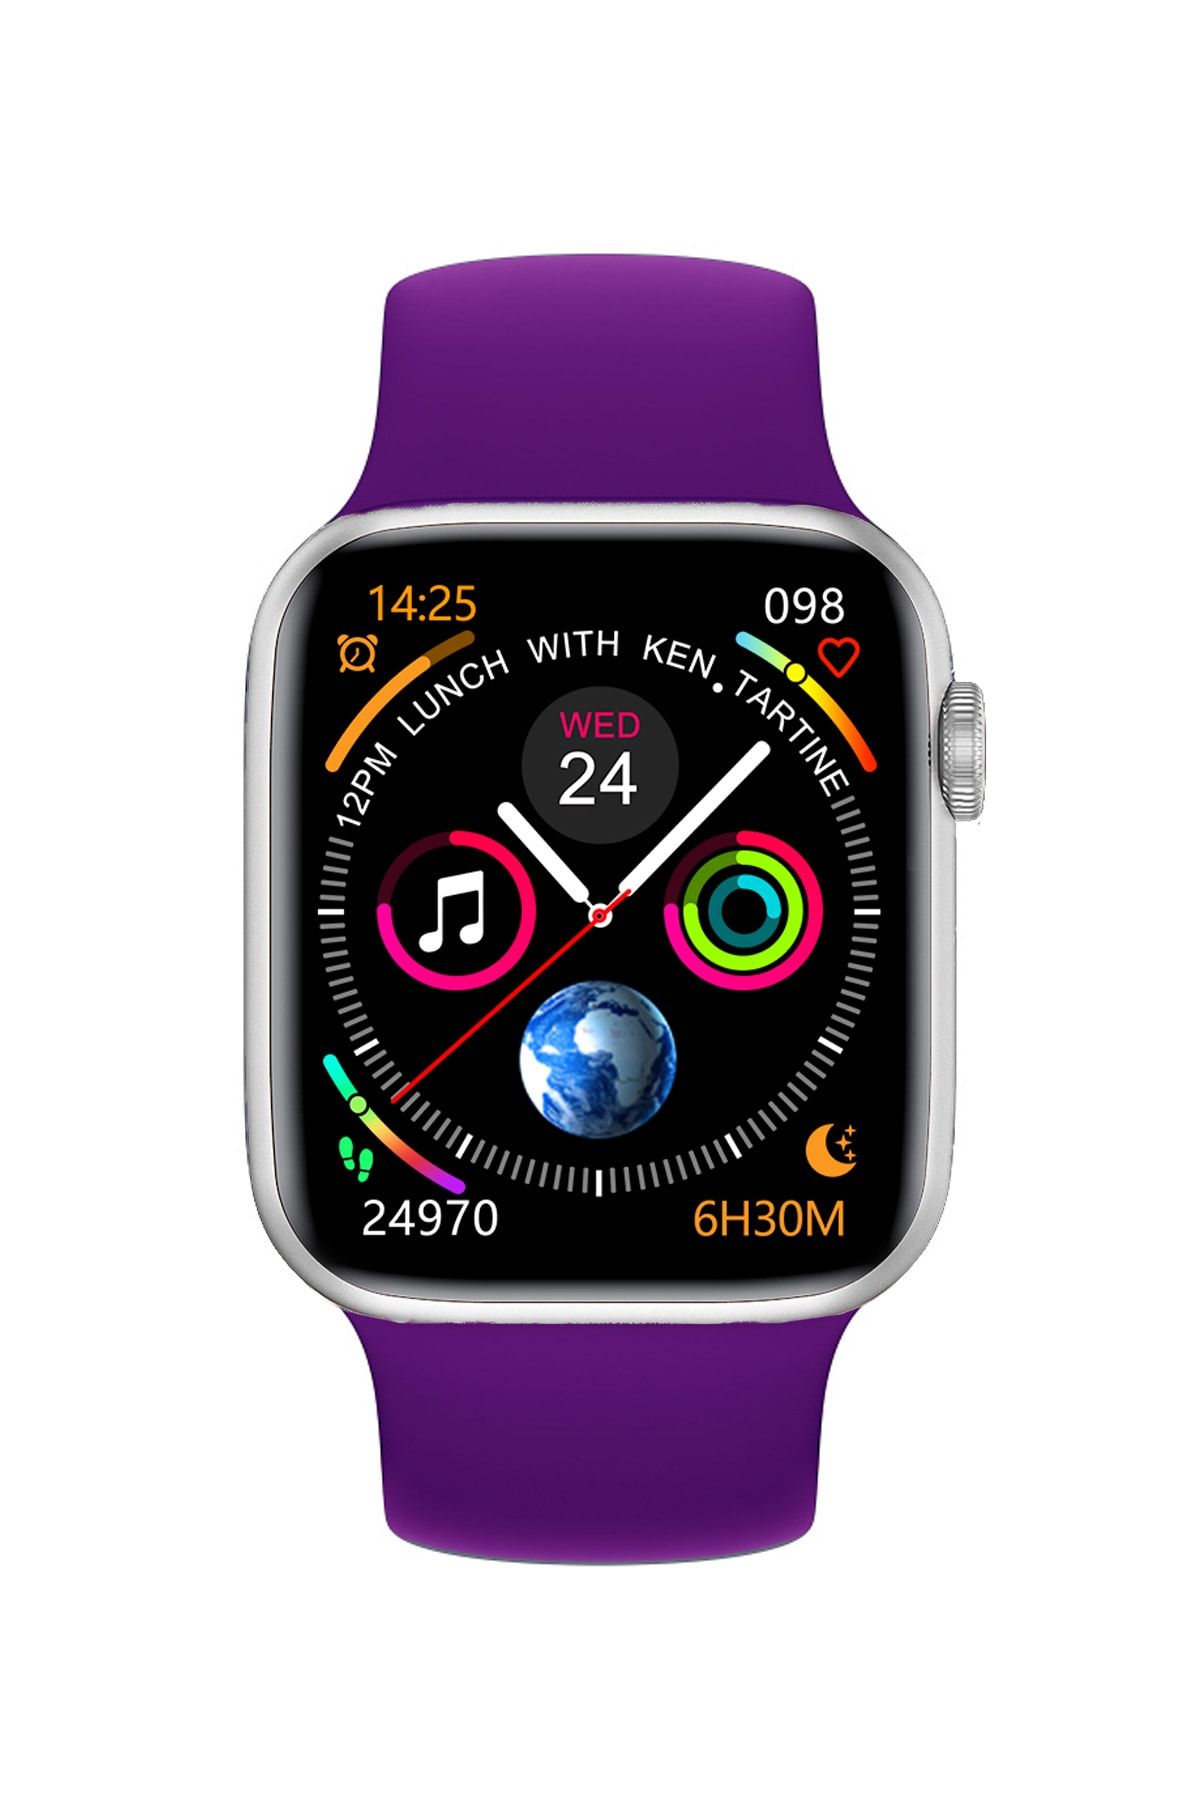 FERRO Watch 7 Android Ve Ios Uyumlu Akıllı Saat